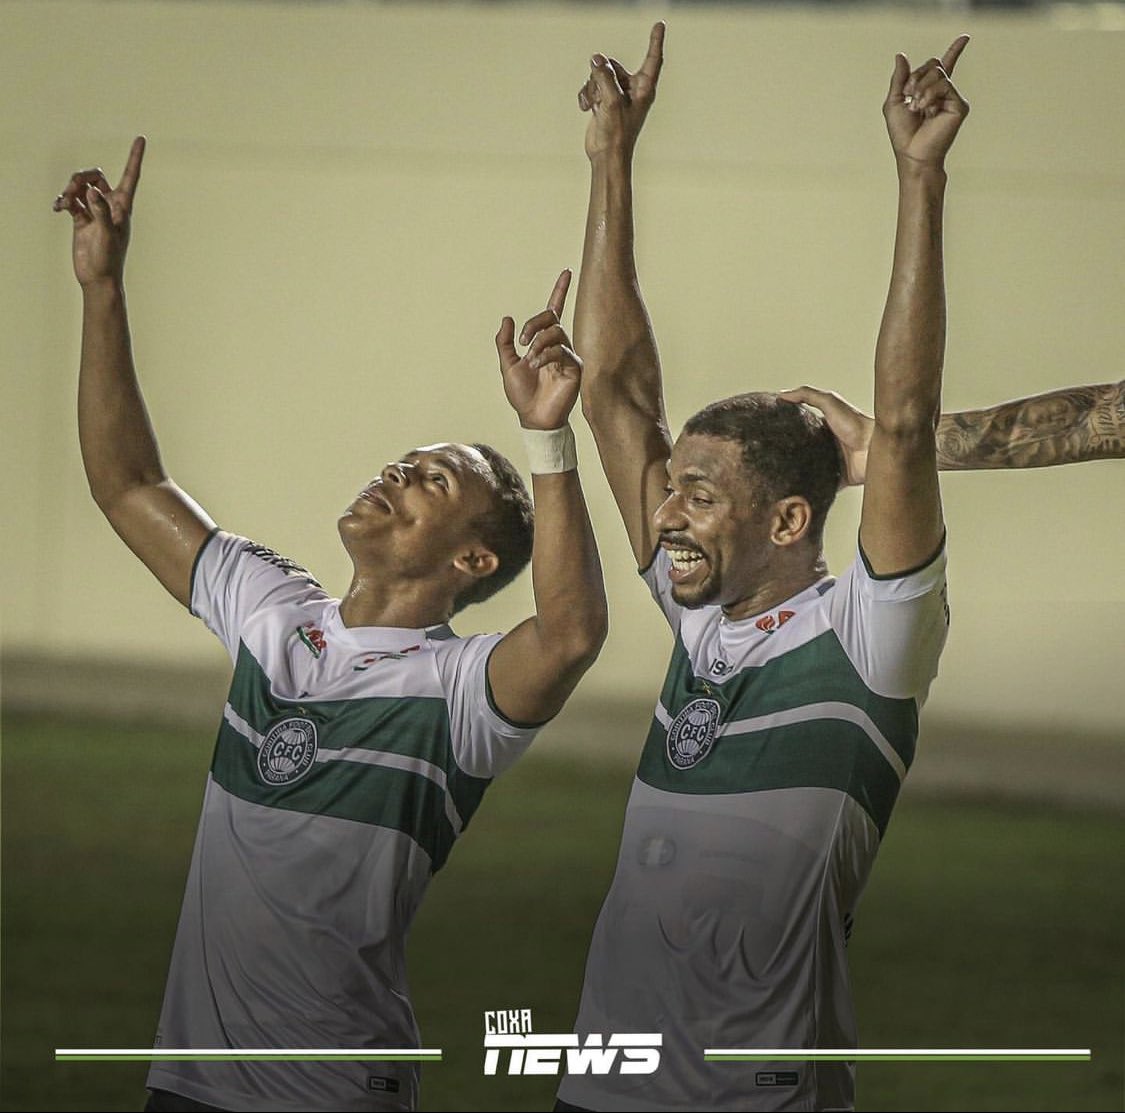 Confiança 0 x 1 Coritiba – Coxa vence a 4ª vitória seguida na Série B